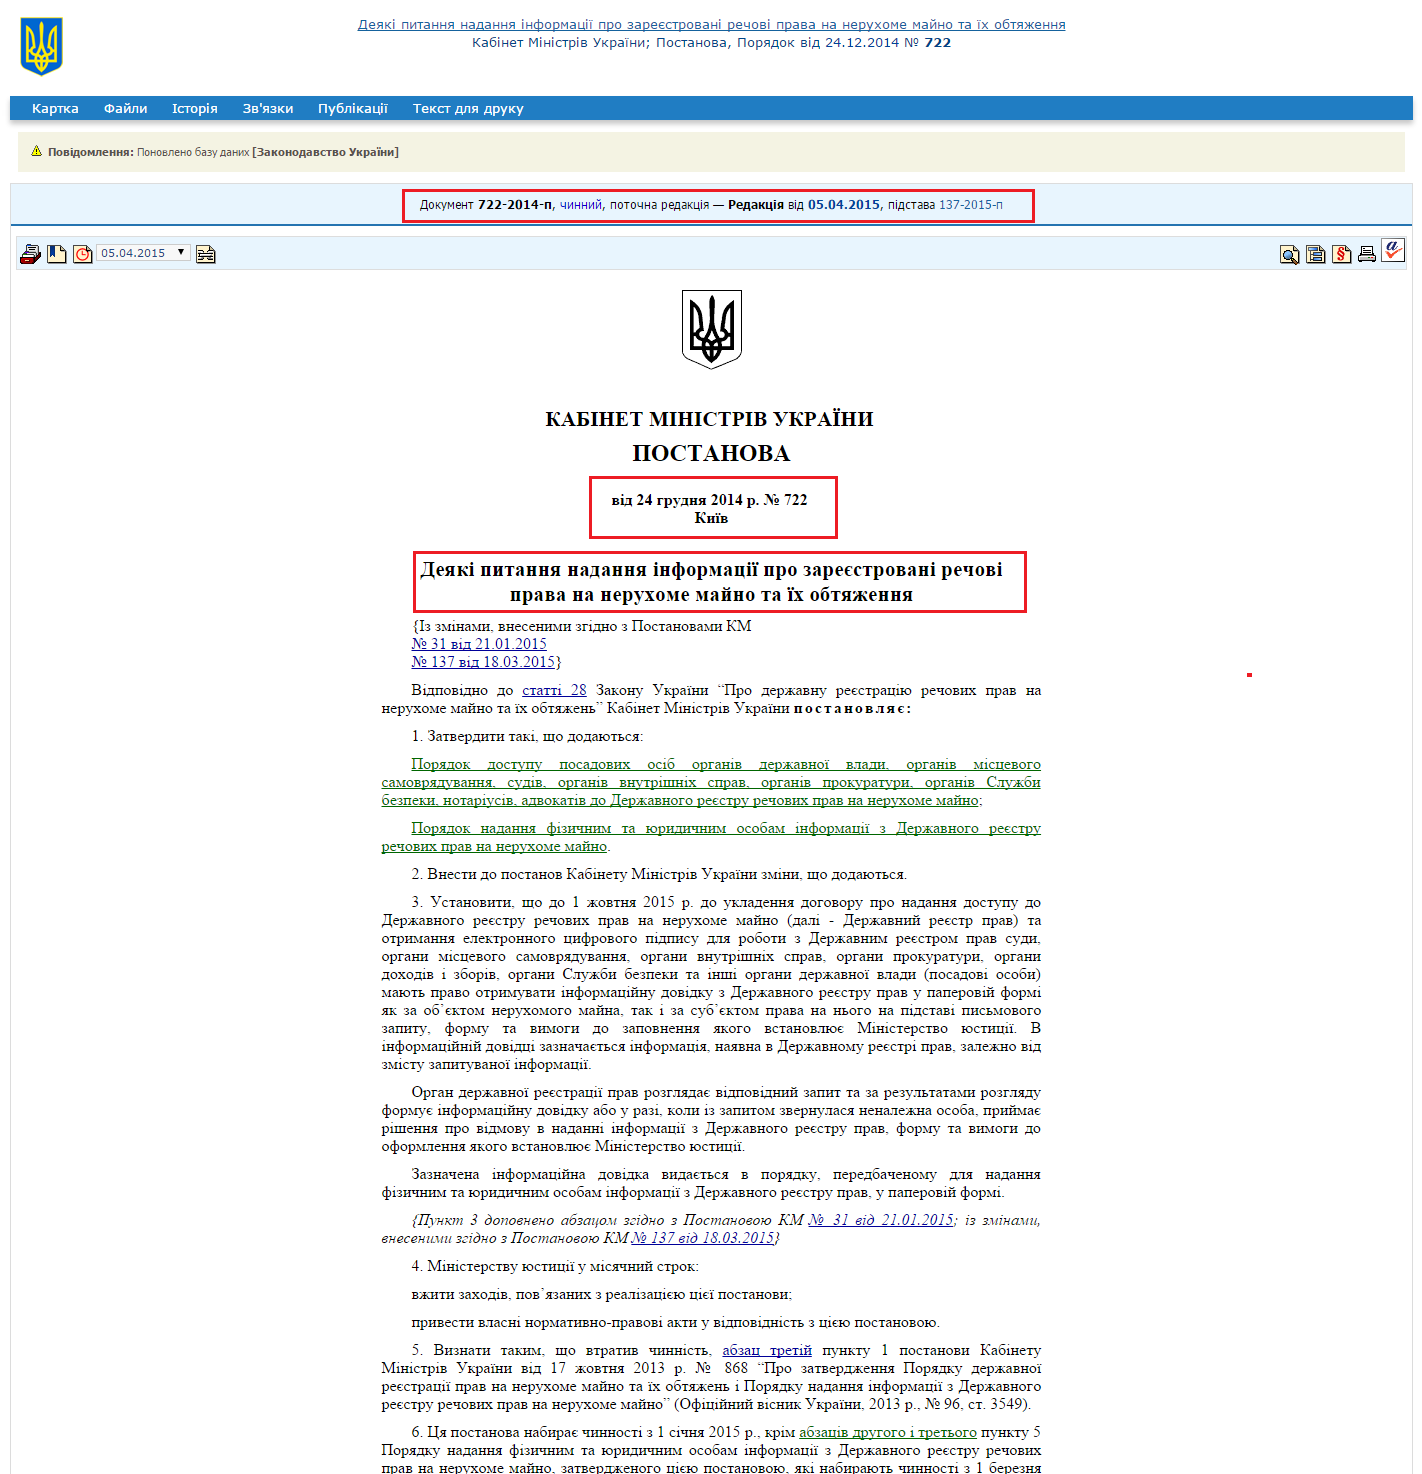 http://zakon4.rada.gov.ua/laws/show/722-2014-%D0%BF